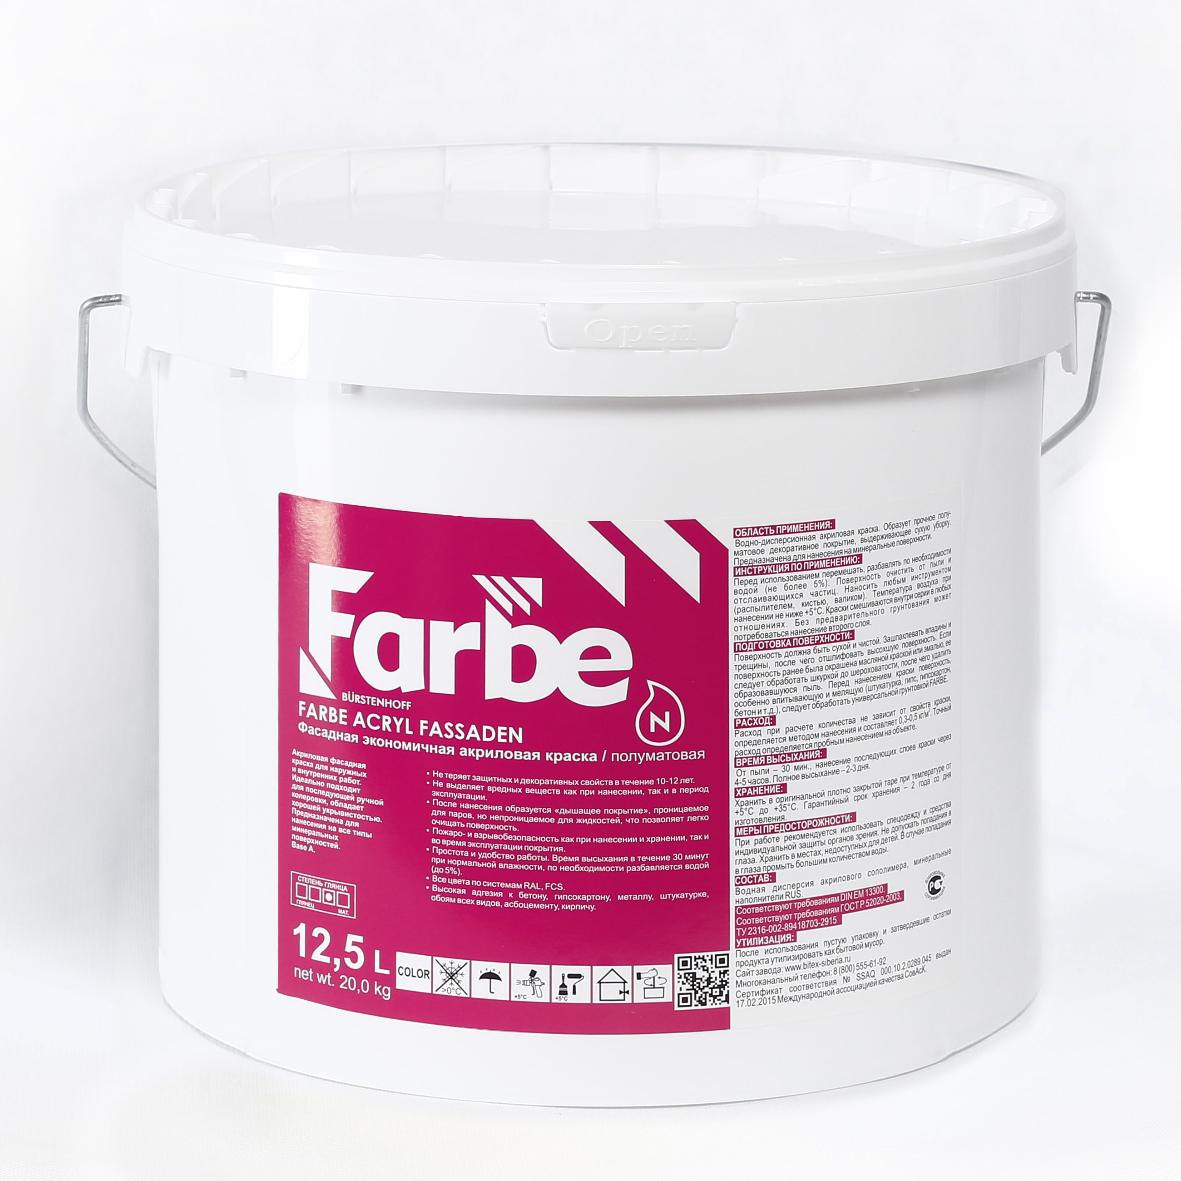 Фасадные краски FARBE ACRYL FASSADEN (База A) – Фасадная экономичная акриловая краска (20 кг) купить оптом от производителя